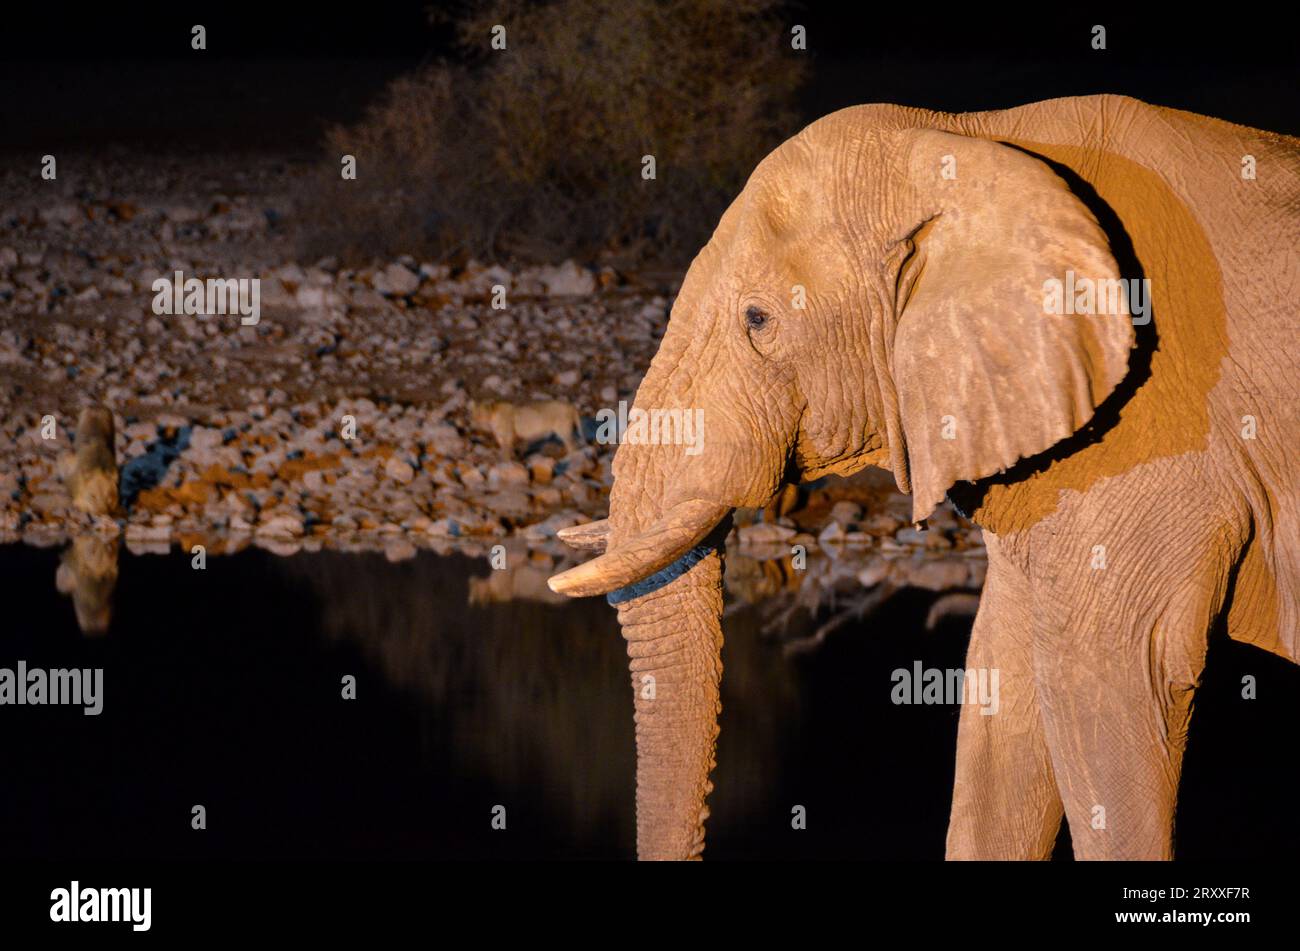 elephant at night in the etosha national park Stock Photo